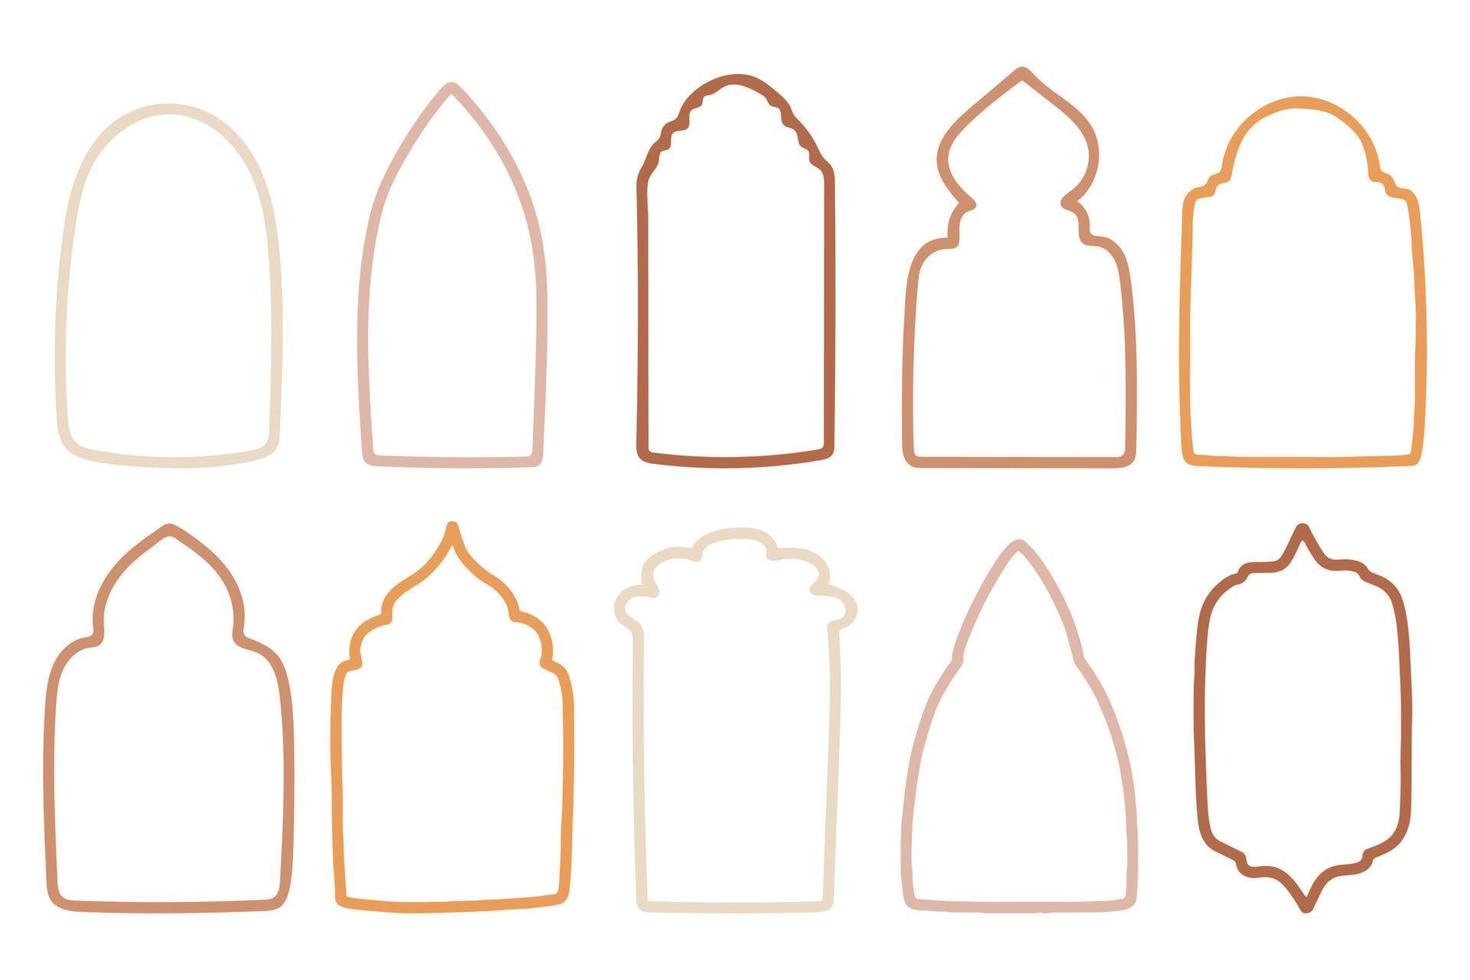 samling av islamic fönster och valv i orientalisk stil med modern boho design, måne, moské kupol och lyktor. vektor illustration.